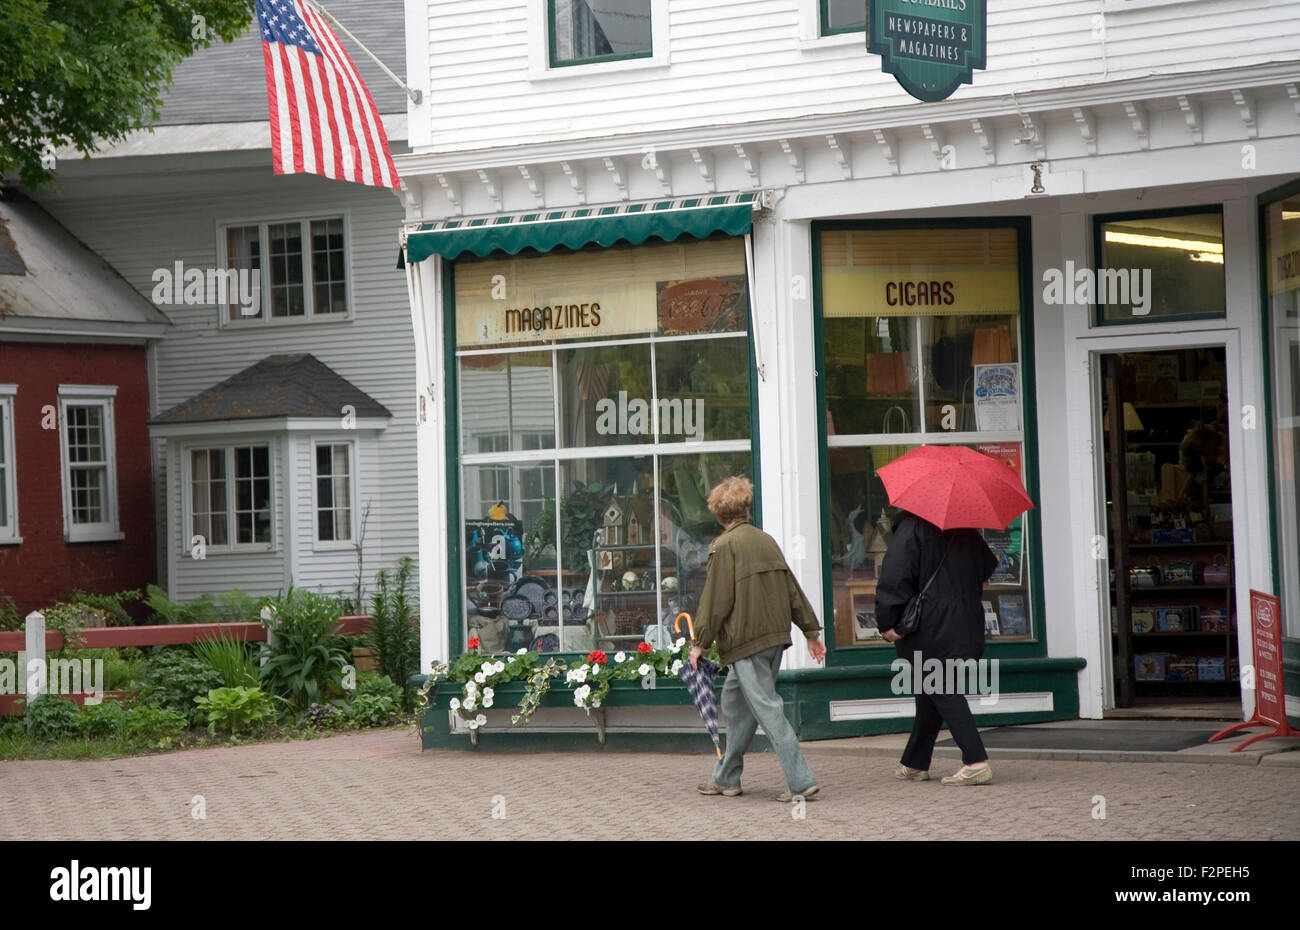 Escena callejera con bandera americana, Stowe, Vermont, EE.UU. Foto de stock